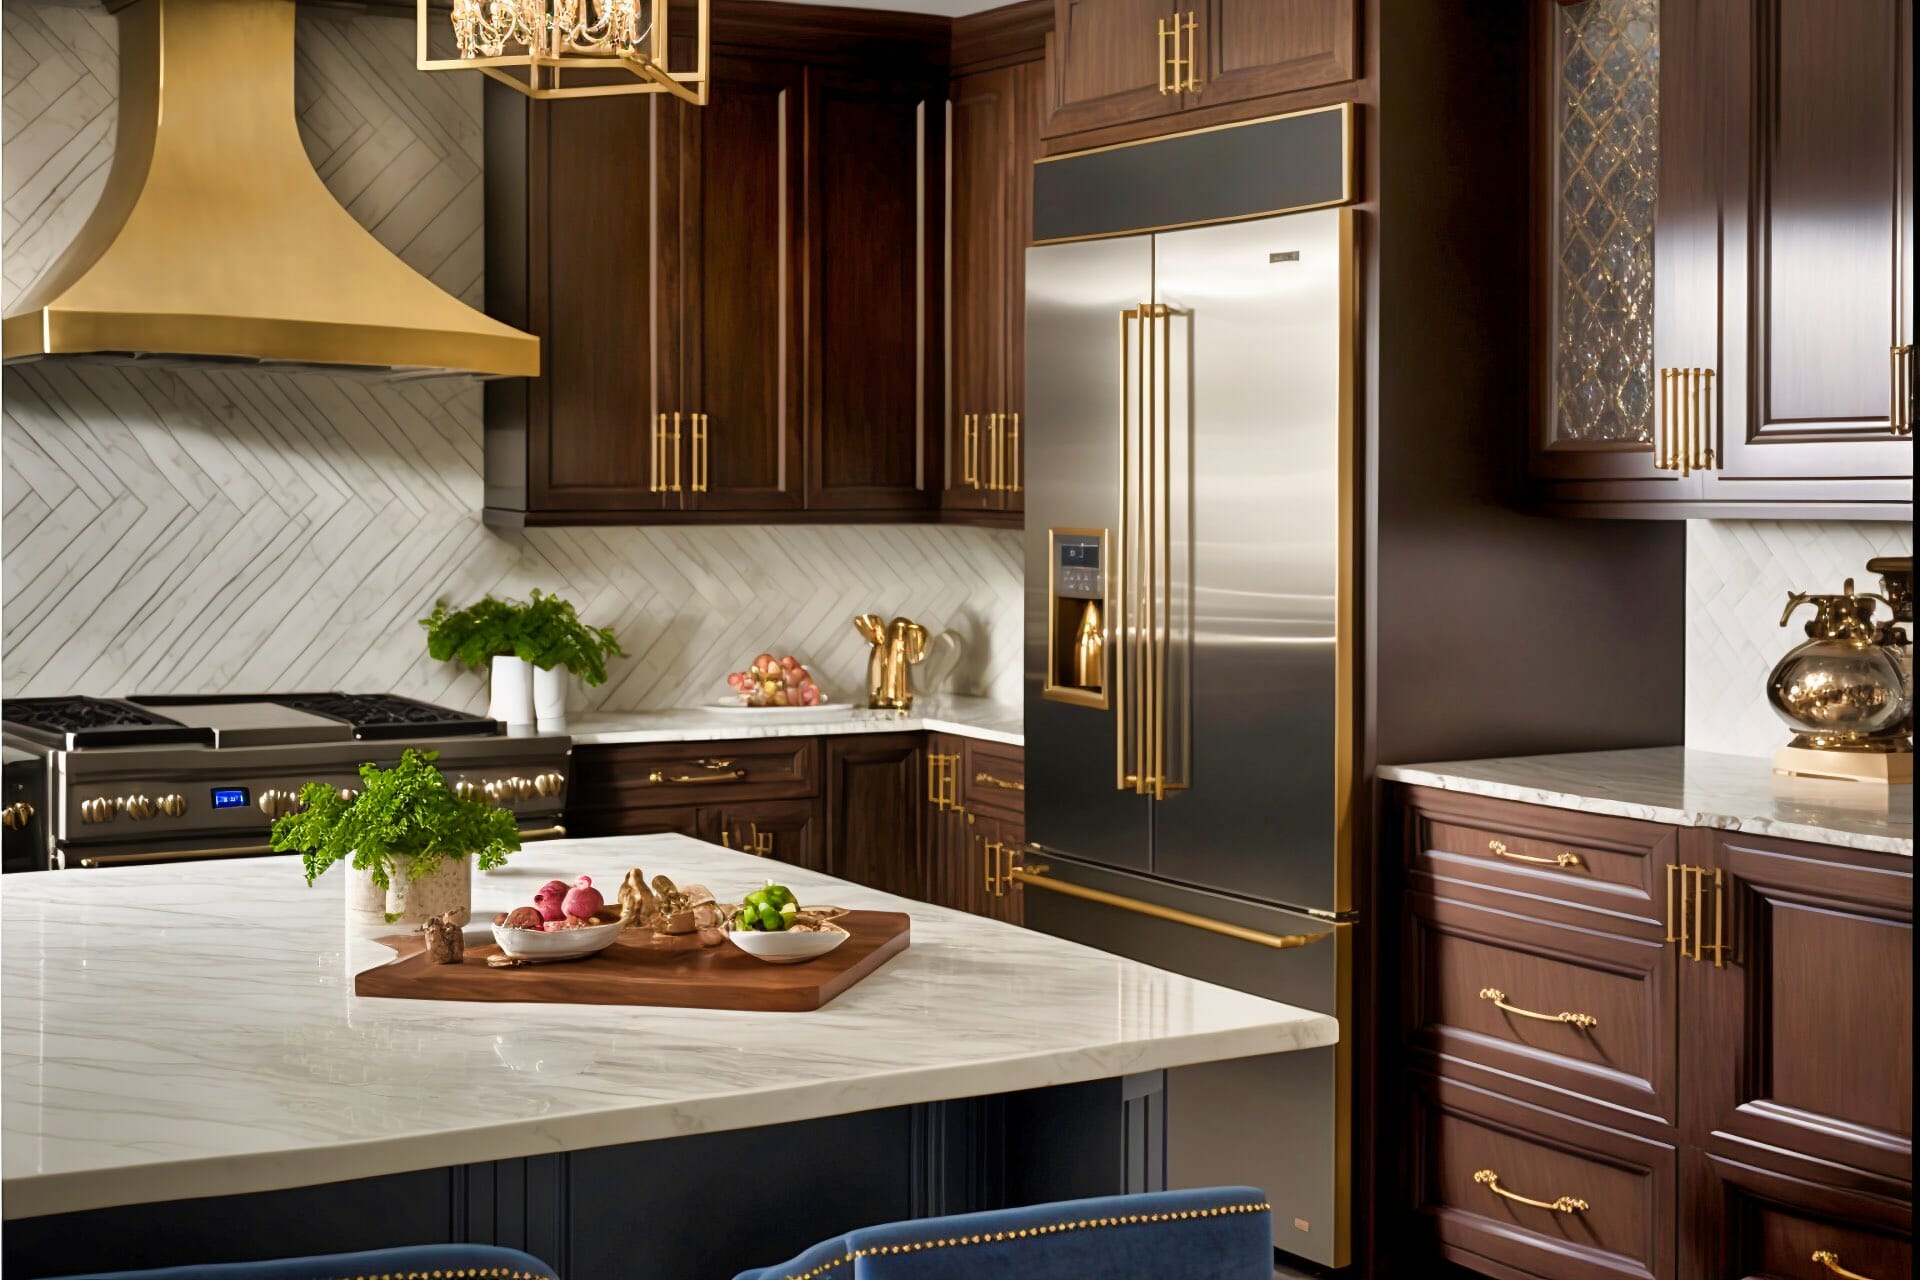 Eine Glamouröse Küche Mit Edlen Eichenmöbeln, Goldenen Beschlägen Und Akzenten Sowie Einer Arbeitsplatte Aus Marmor.